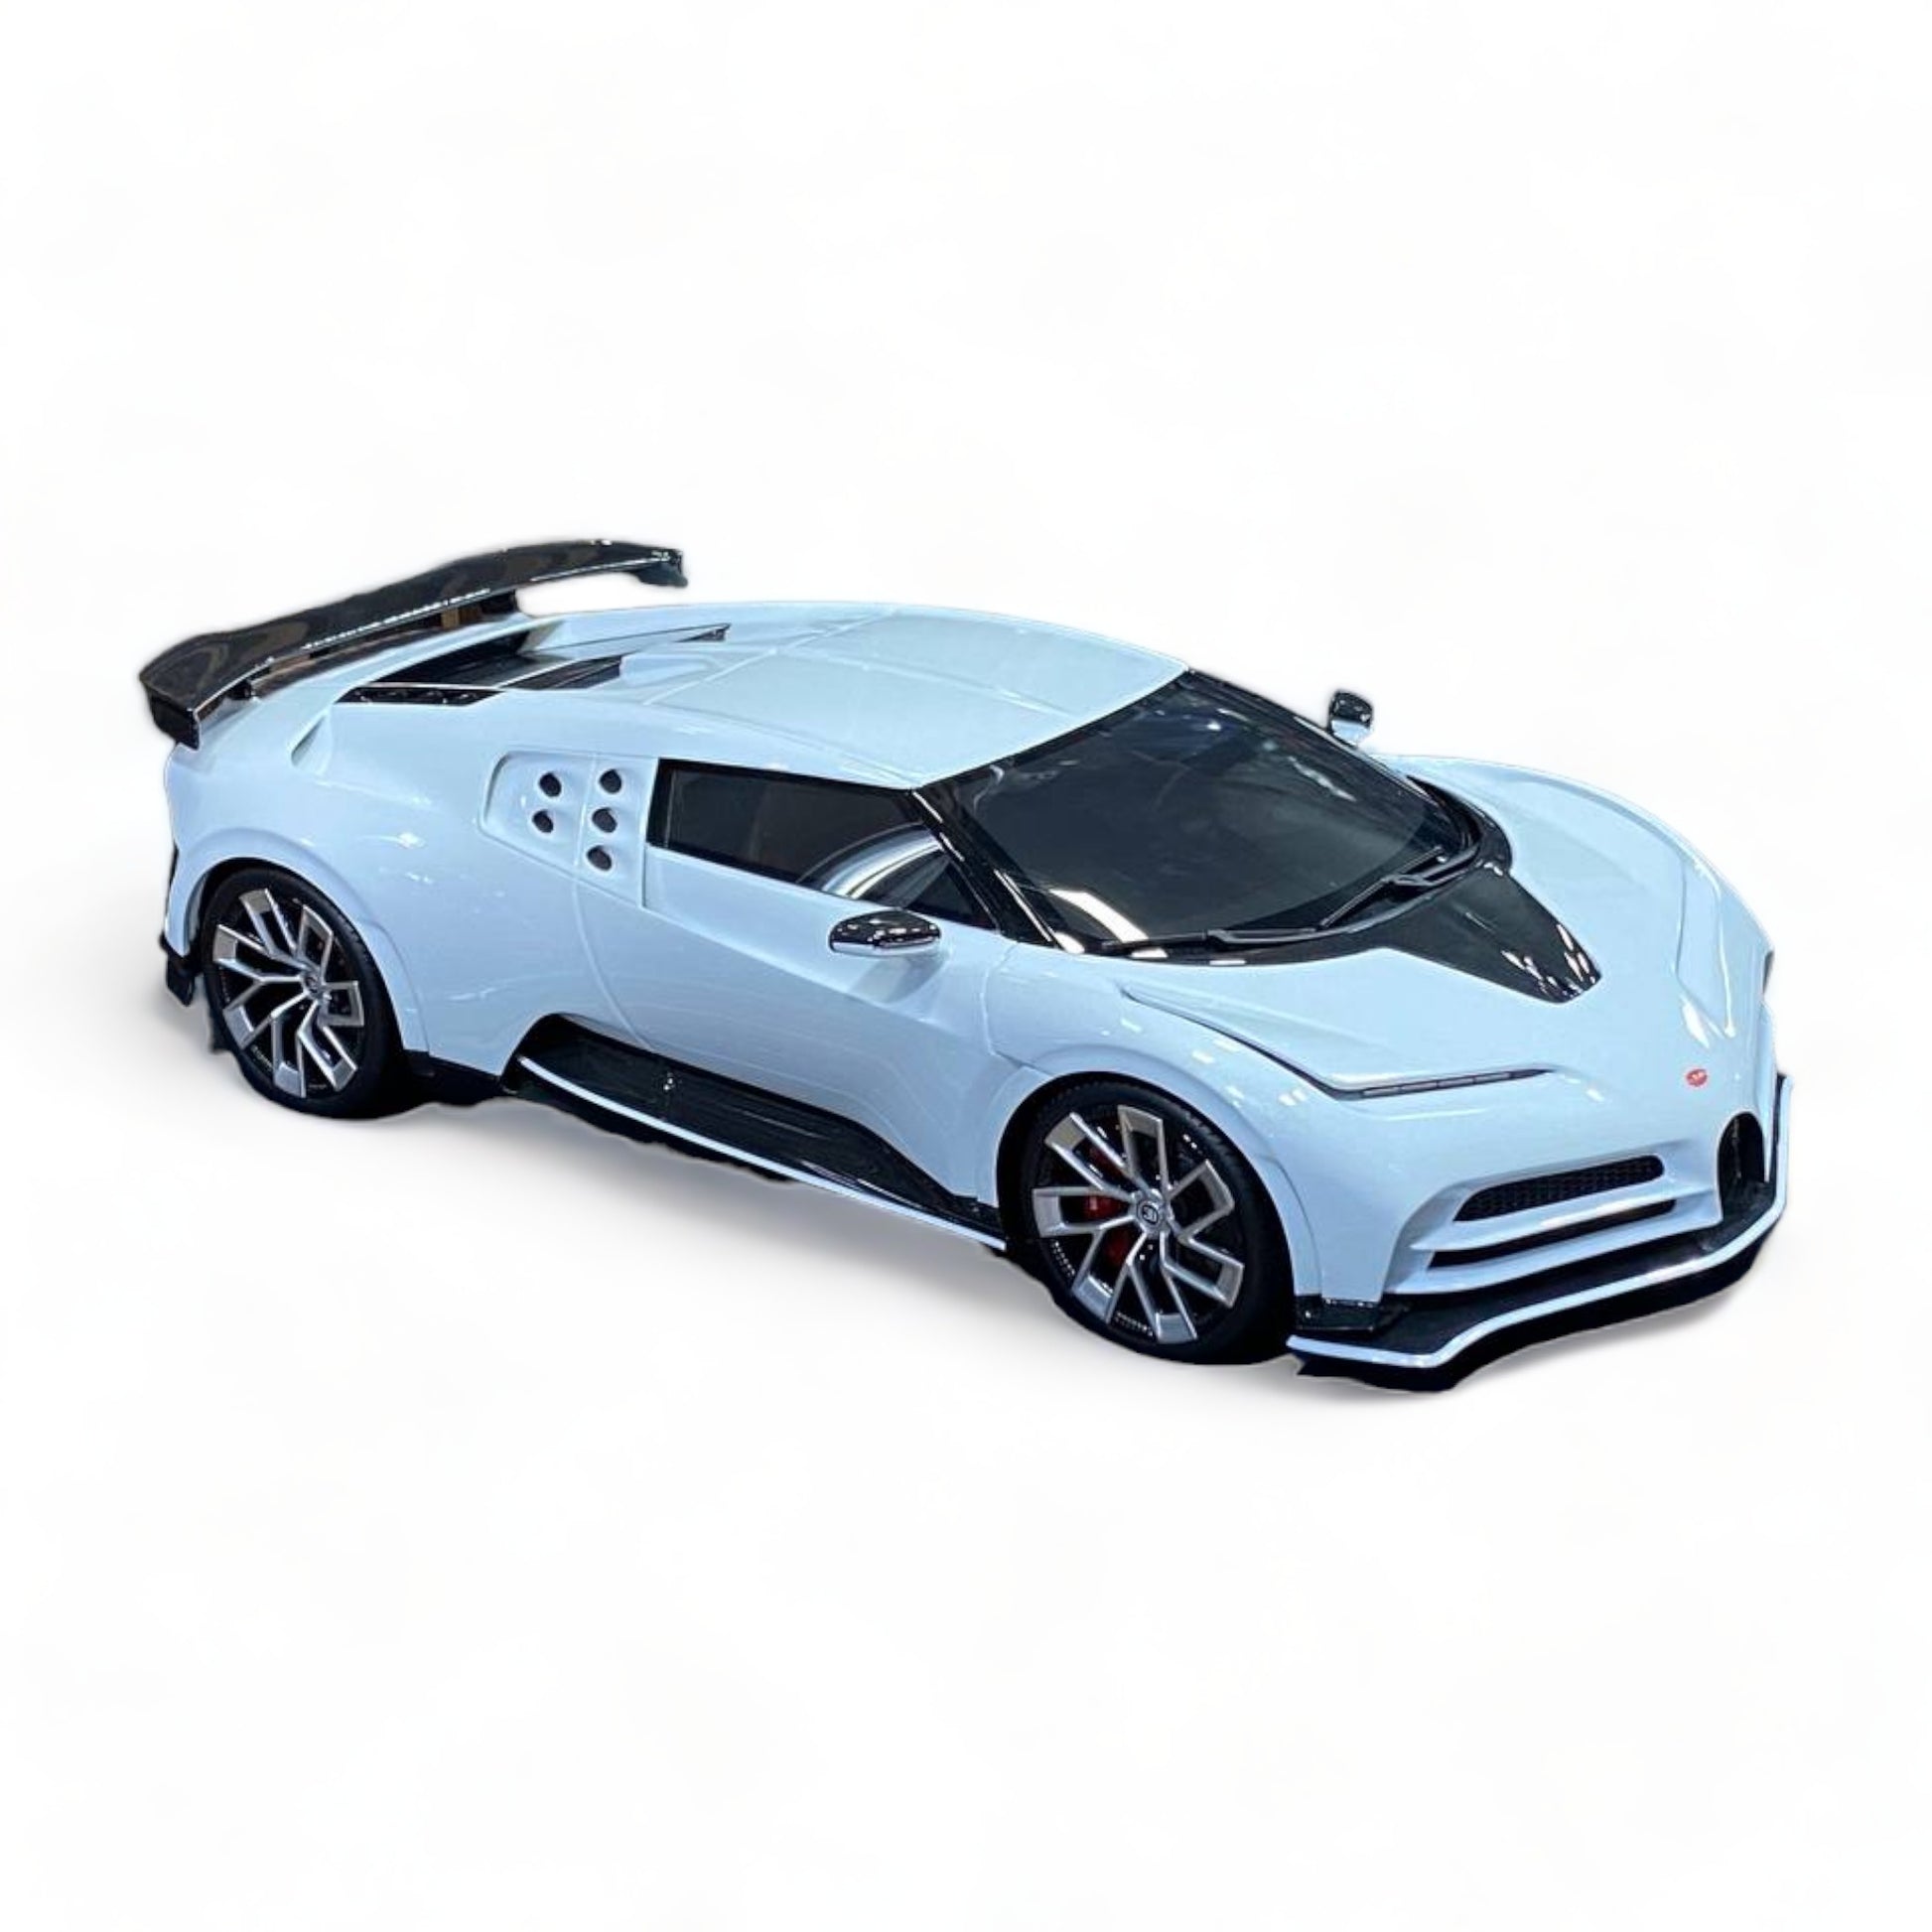 1/18 Bugatti Centodieci White by MR Collection Model Car|Sold in Dturman.com Dubai UAE.